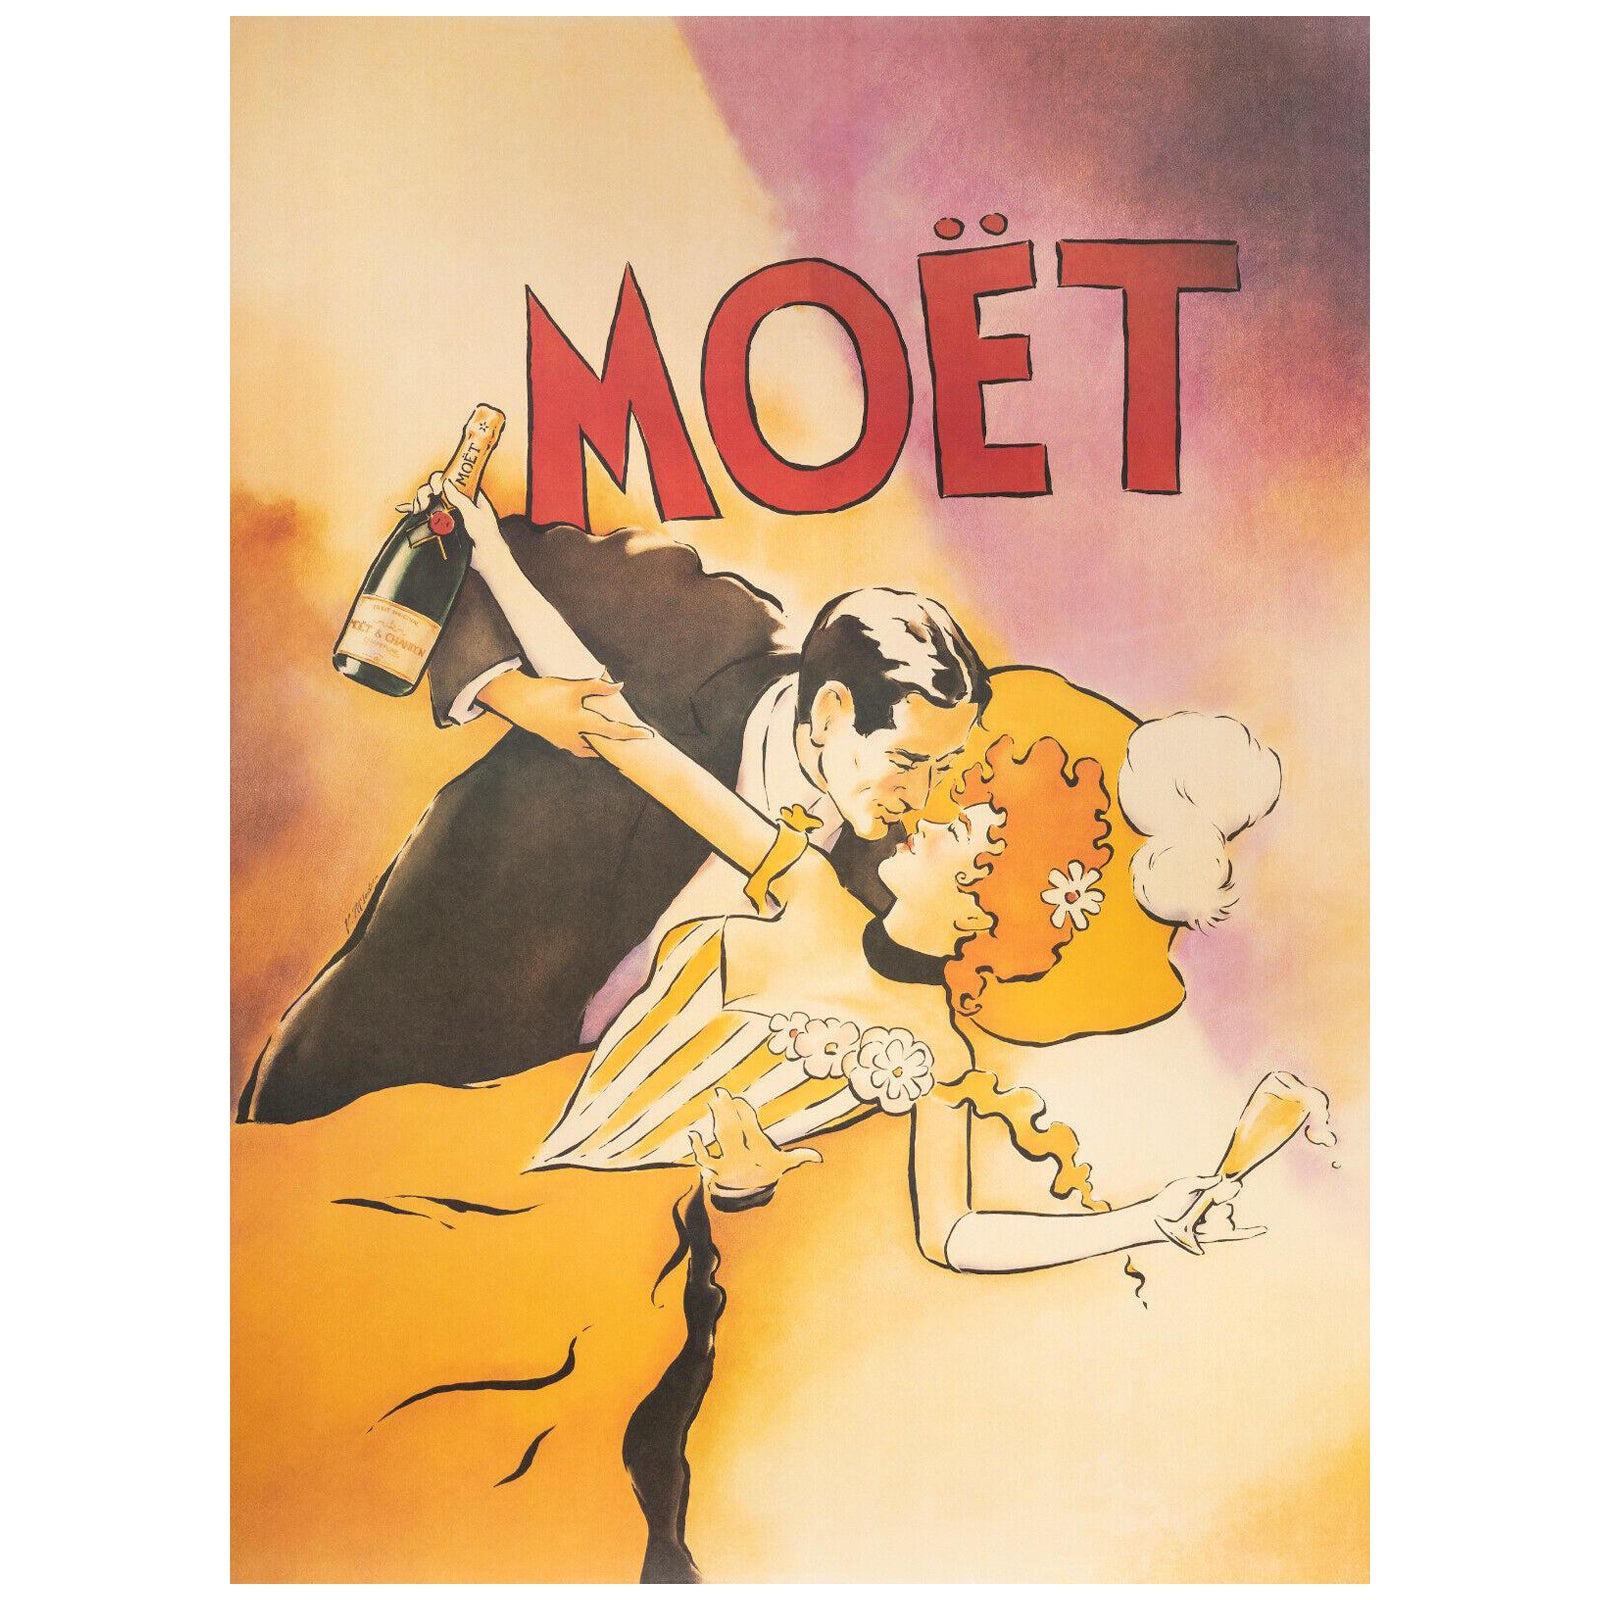 Original Poster-V. McIndoe-couple-Moet-Chandon-Champagne, 1986 For Sale